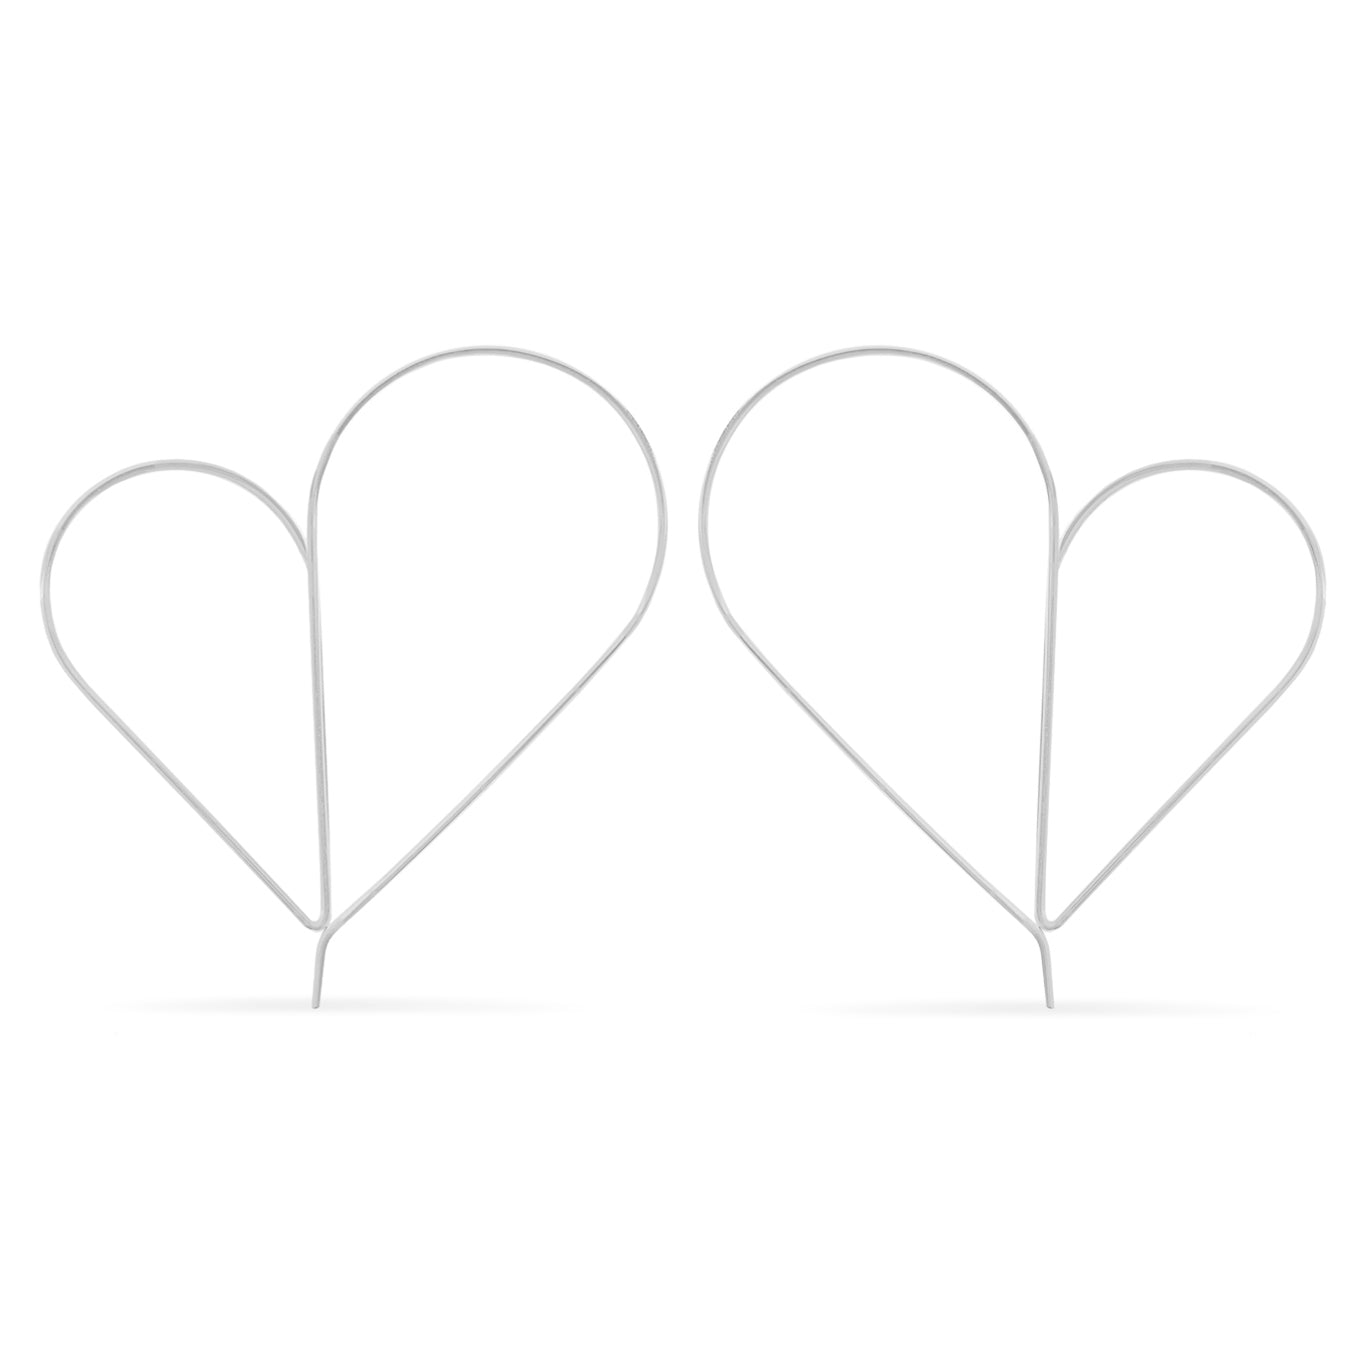 Delicate wire heart hoop earrings in silver